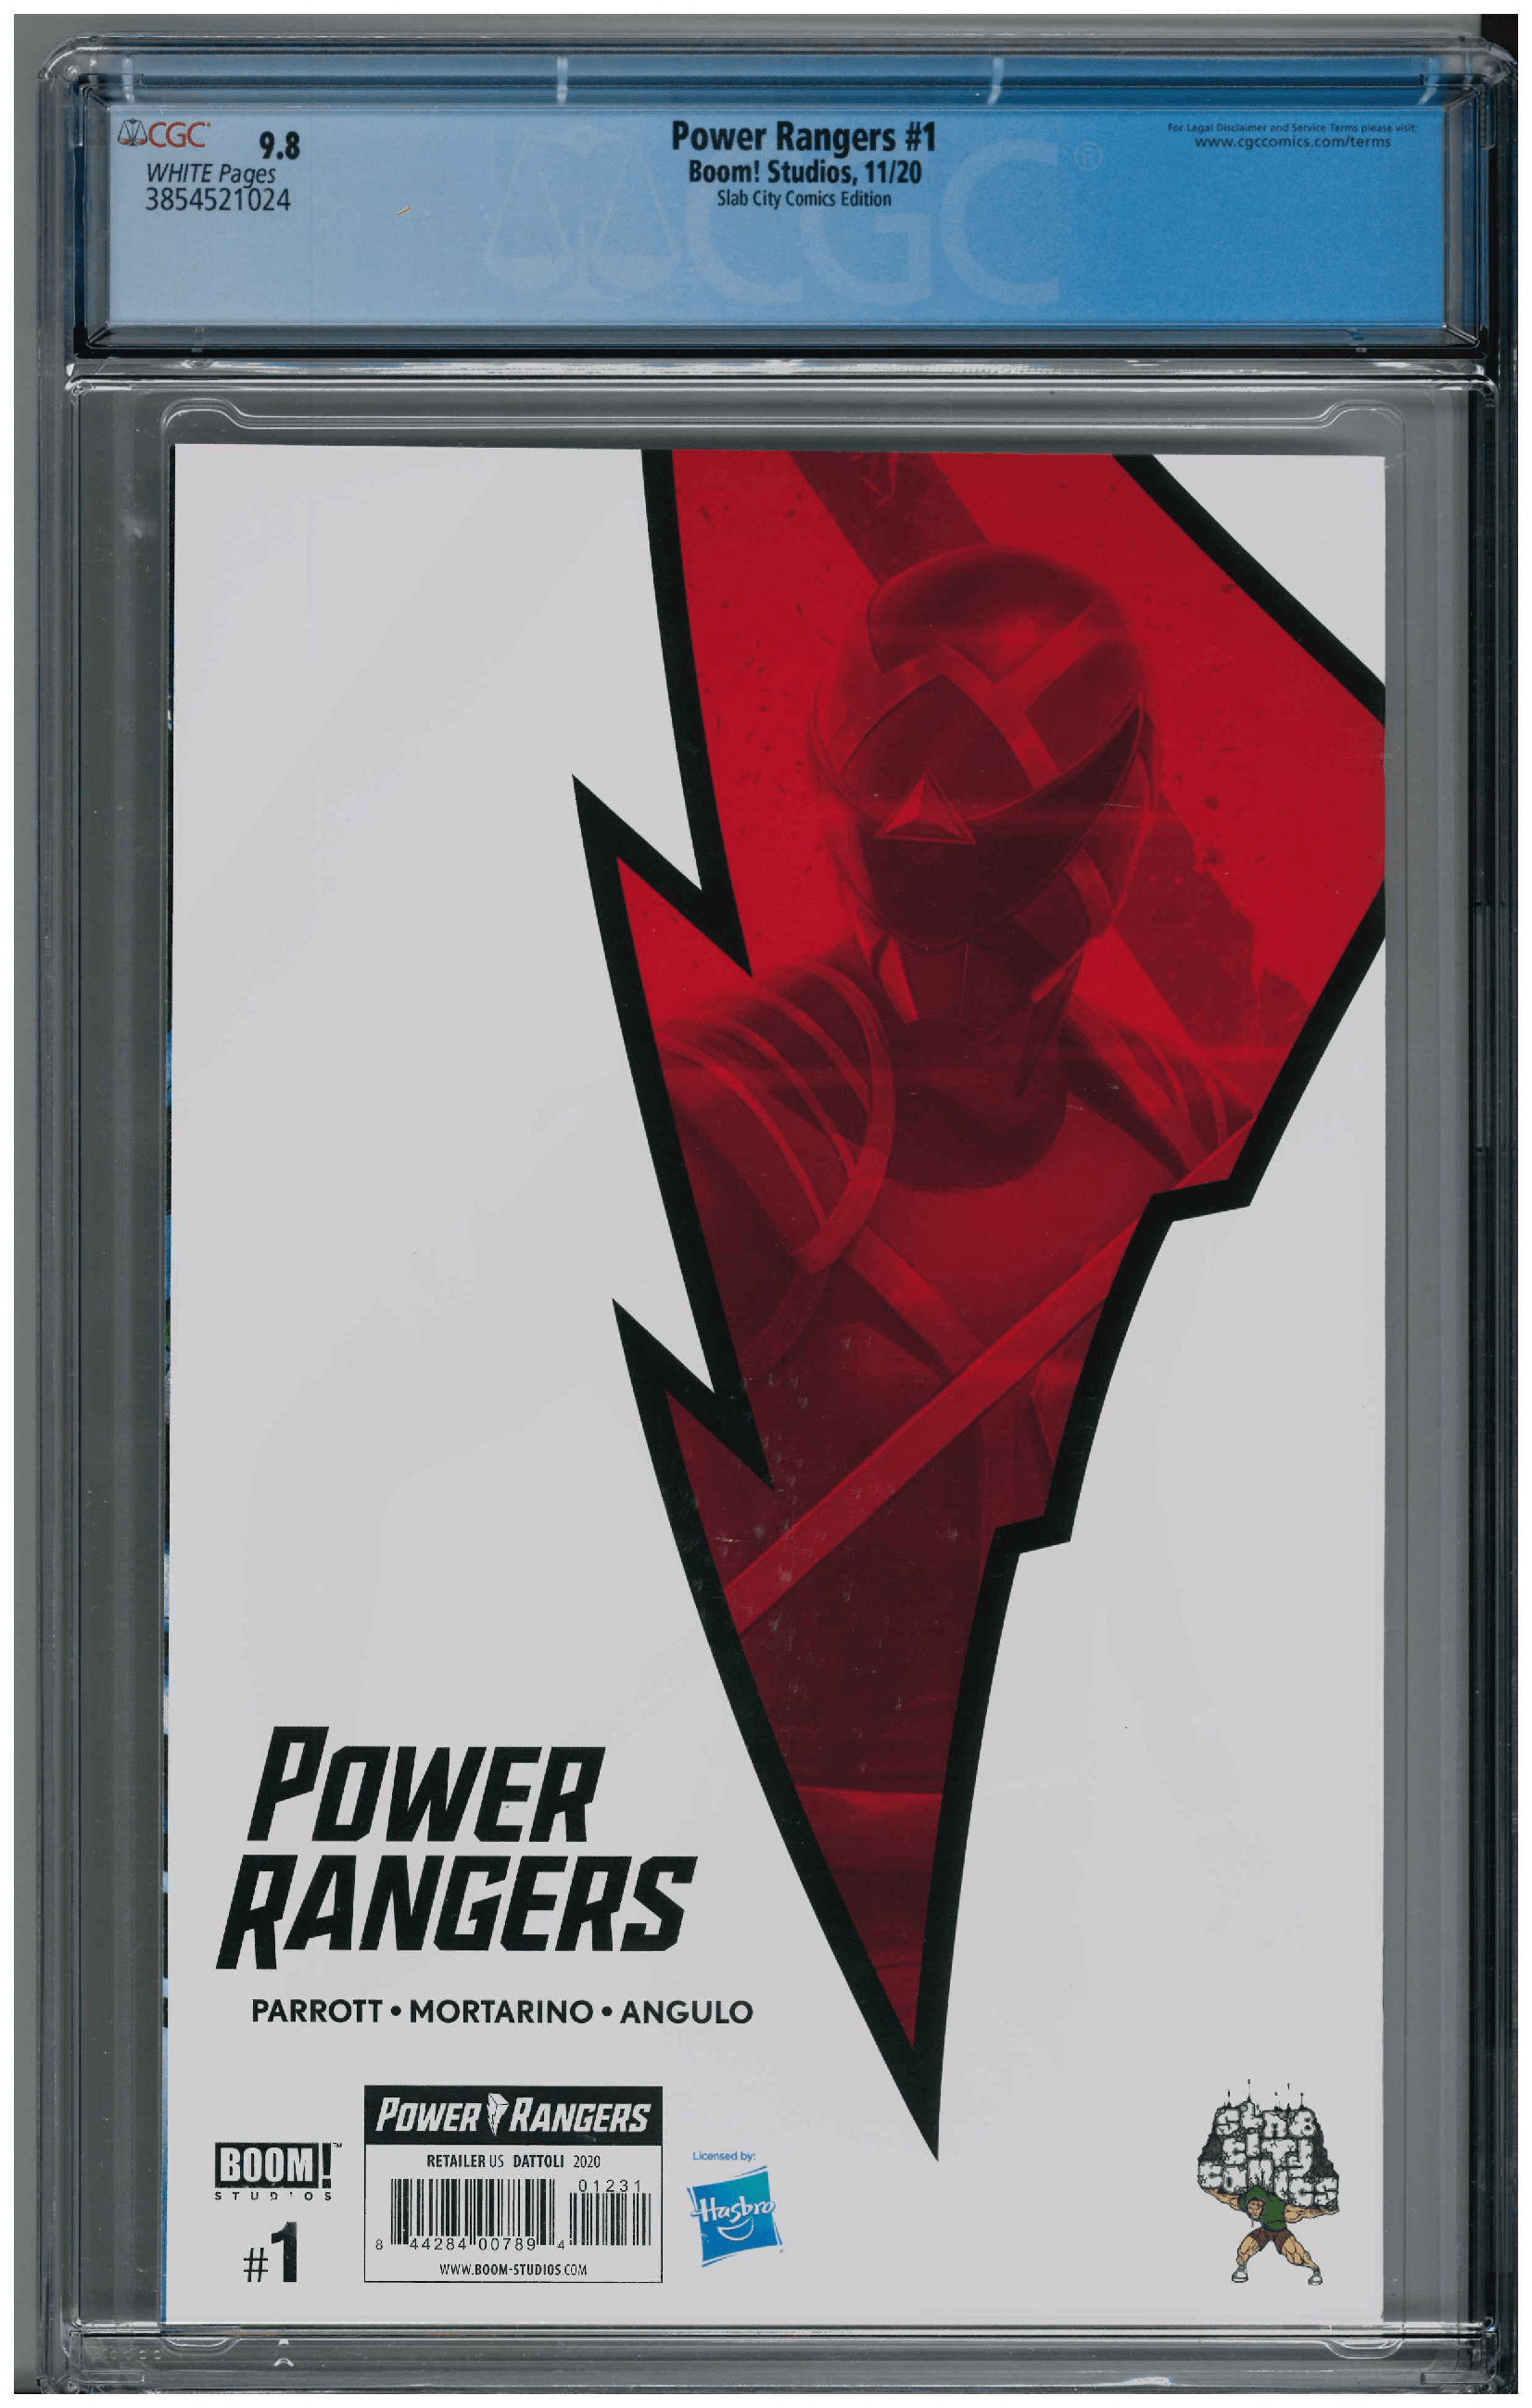 Power Ranger #1 backside